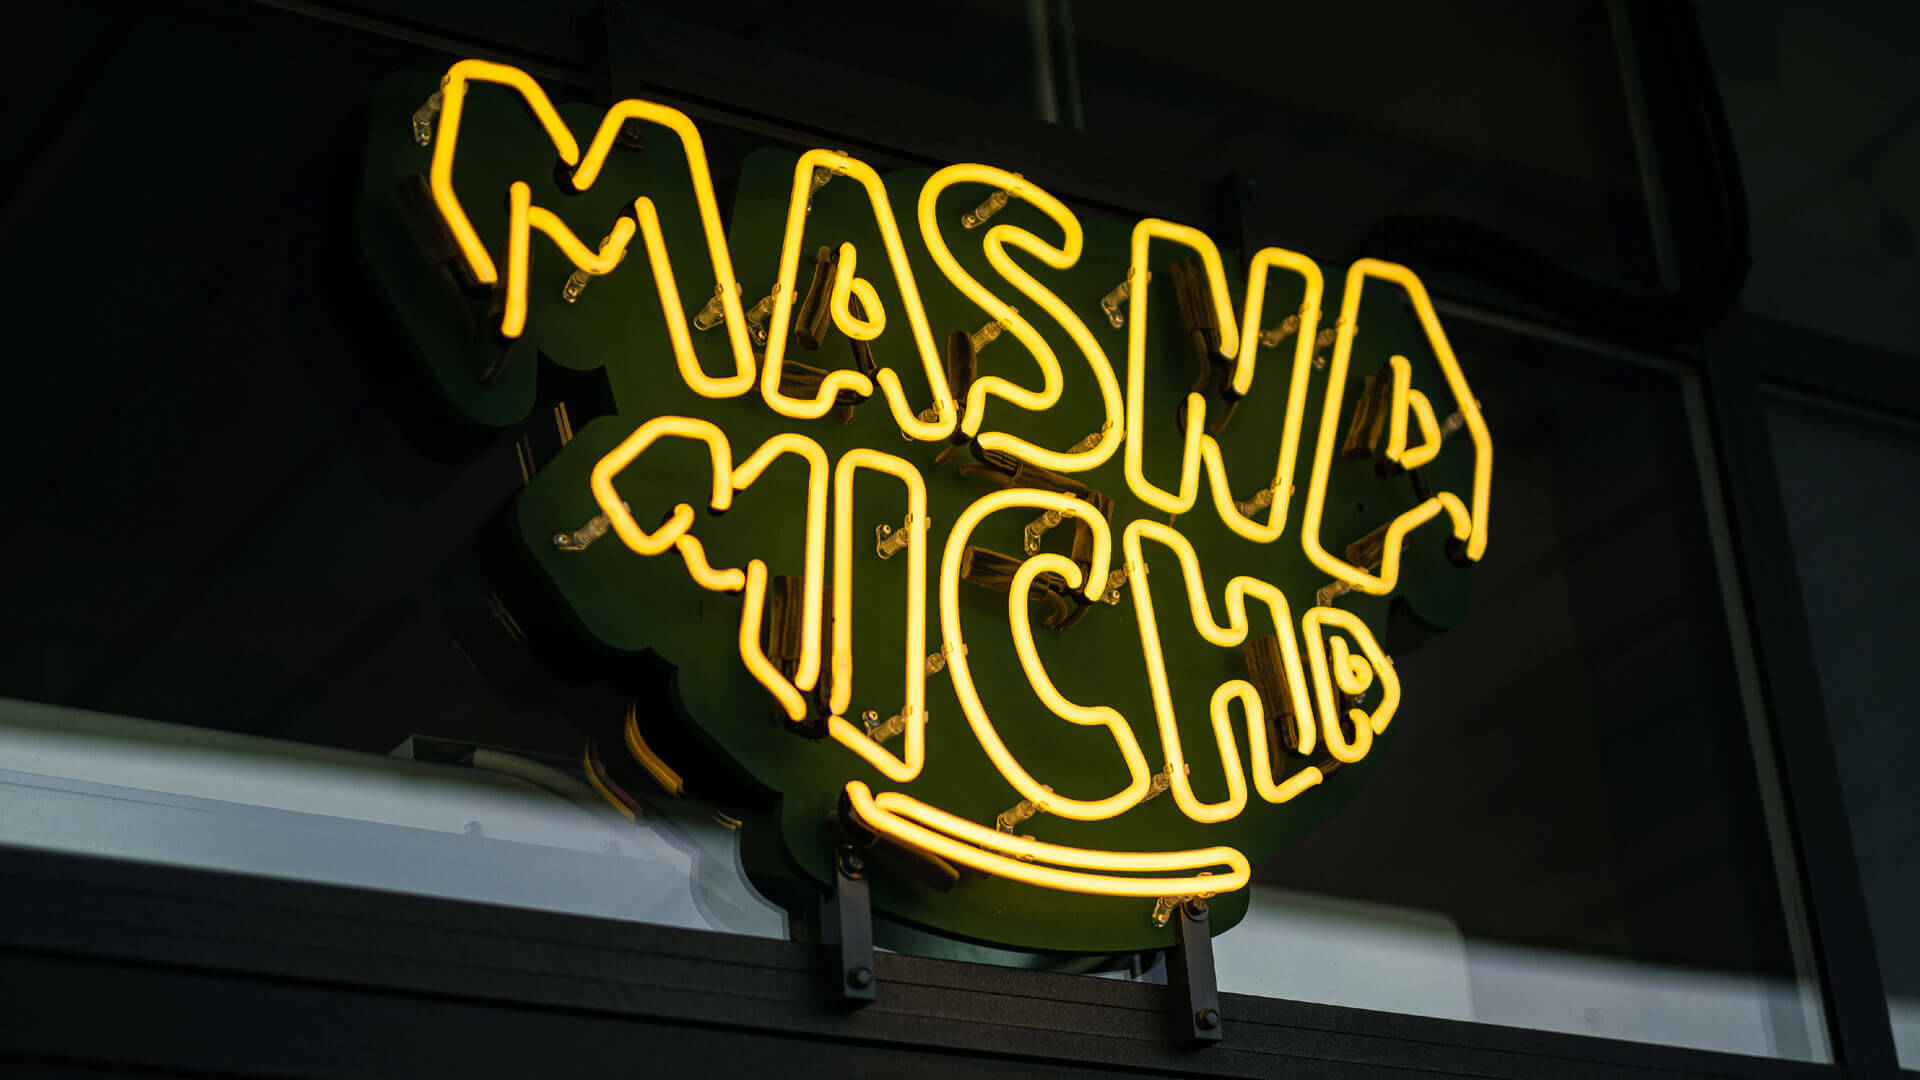 Masna Micha - Enseigne au néon pour le restaurant Masna Micha à Gdansk, à l'extérieur des locaux.